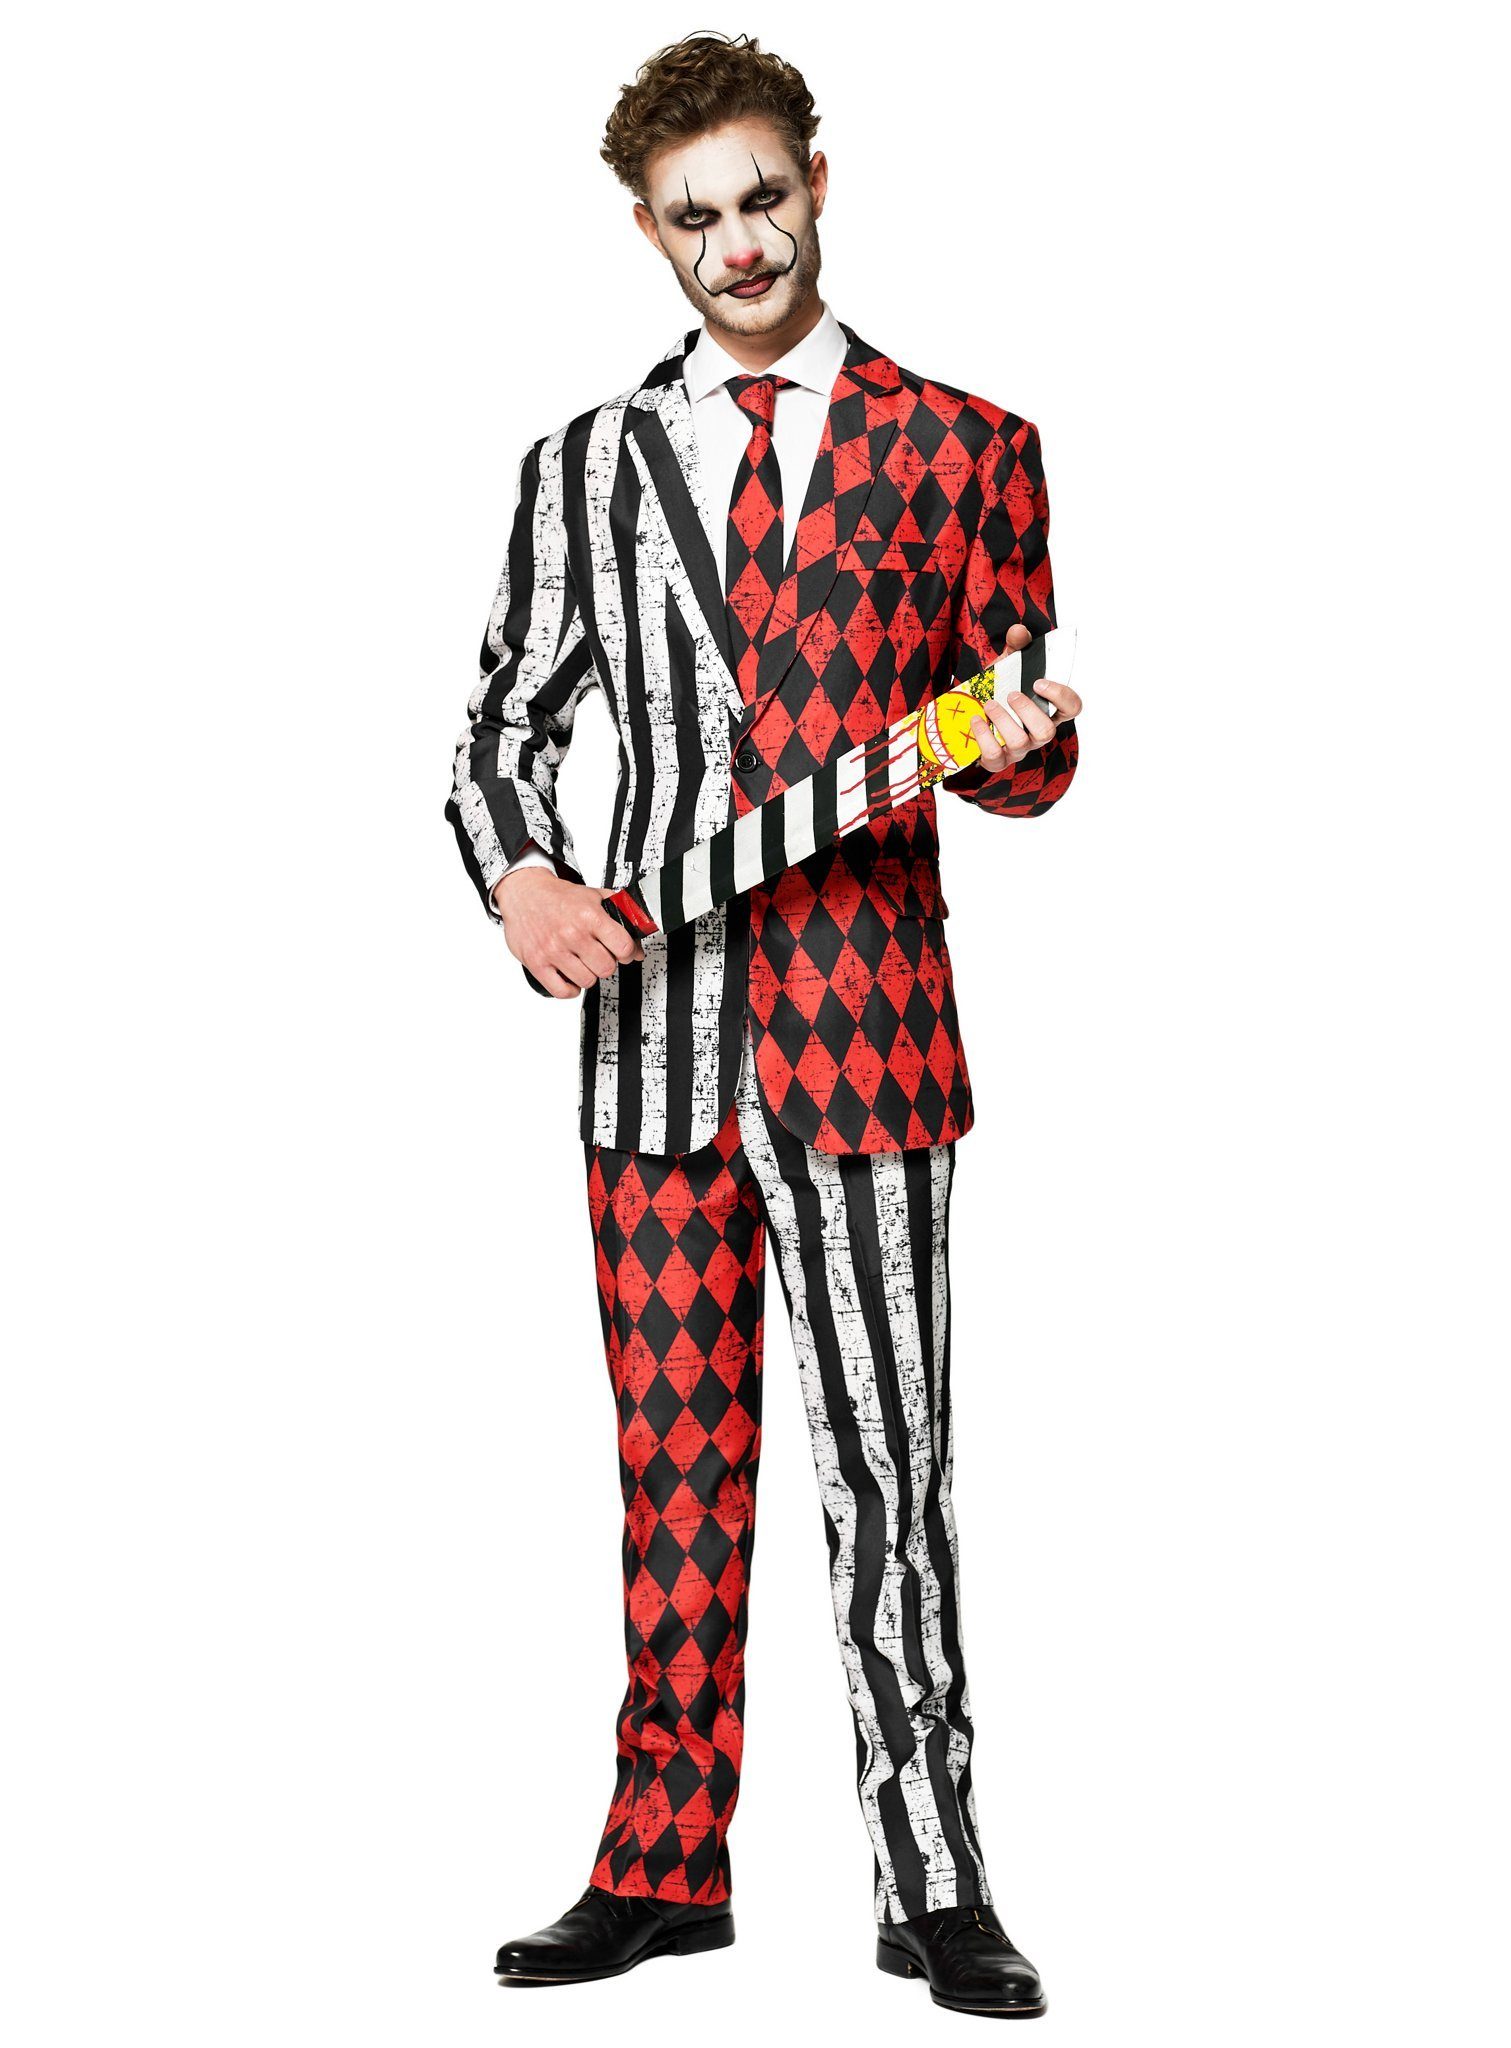 Opposuits Partyanzug Twisted Circus Horror Clown Kostüm, Clown geht auch in cool: Herrenanzug im leicht aus der Rolle fallenden